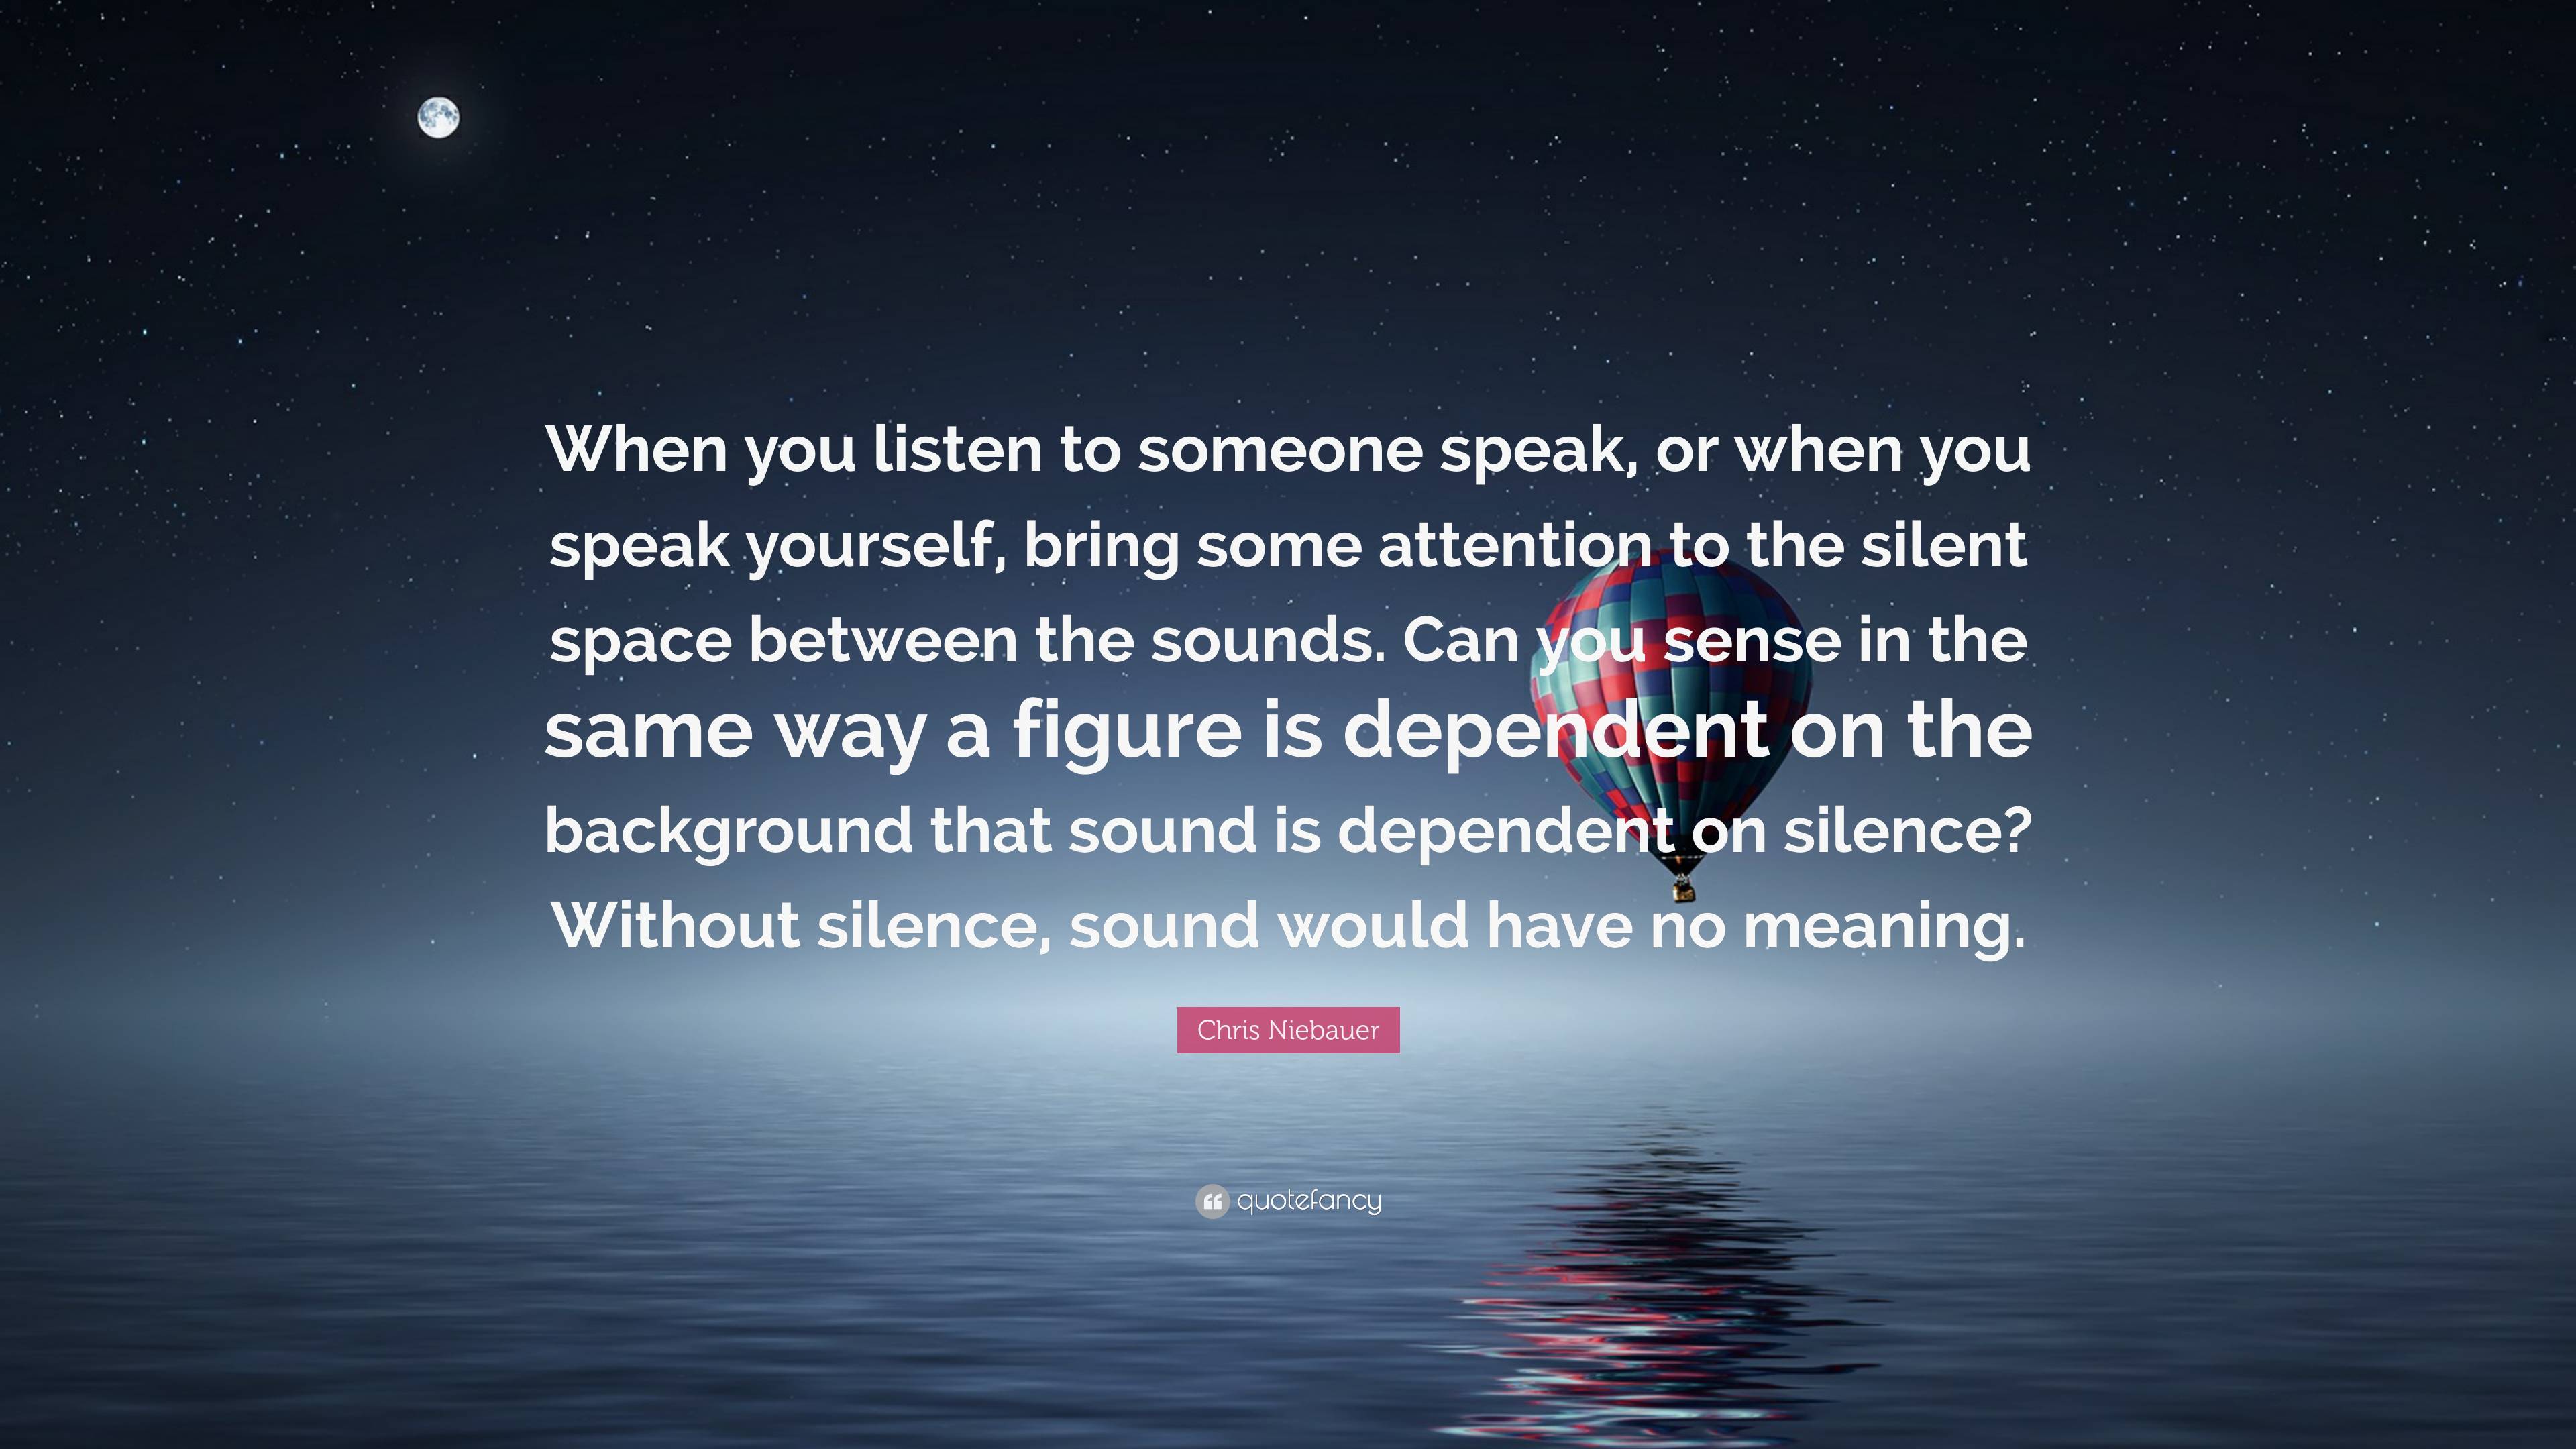 Chris Niebauer Quote: “When you listen to someone speak, or when